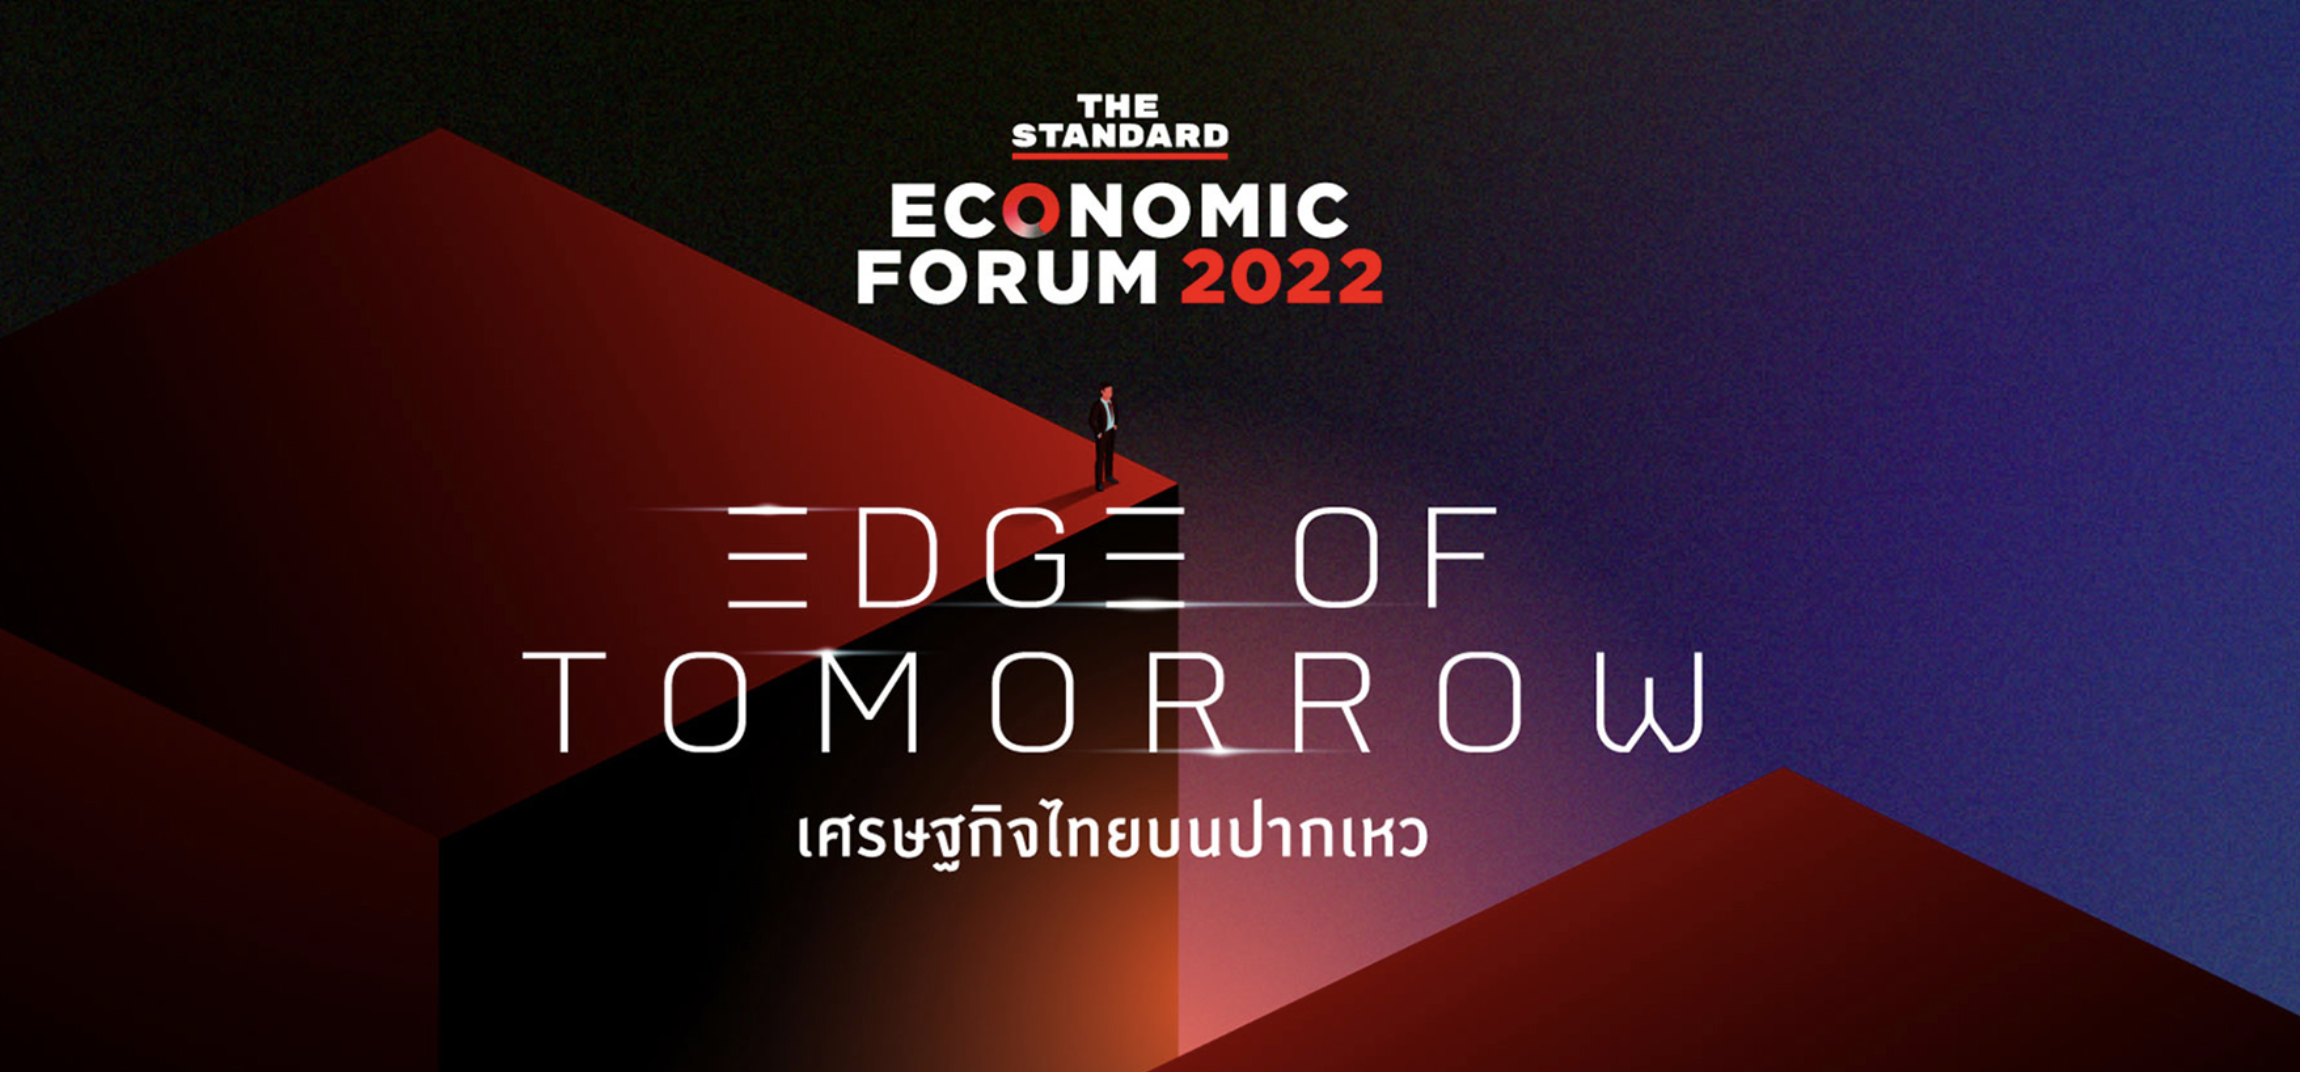 สรุปสิ่งที่ HR ต้องรู้จากงาน THE STANDARD ECONOMIC FORUM 2022 : EDGE OF TOMORROW เศรษฐกิจไทยบนปากเหว